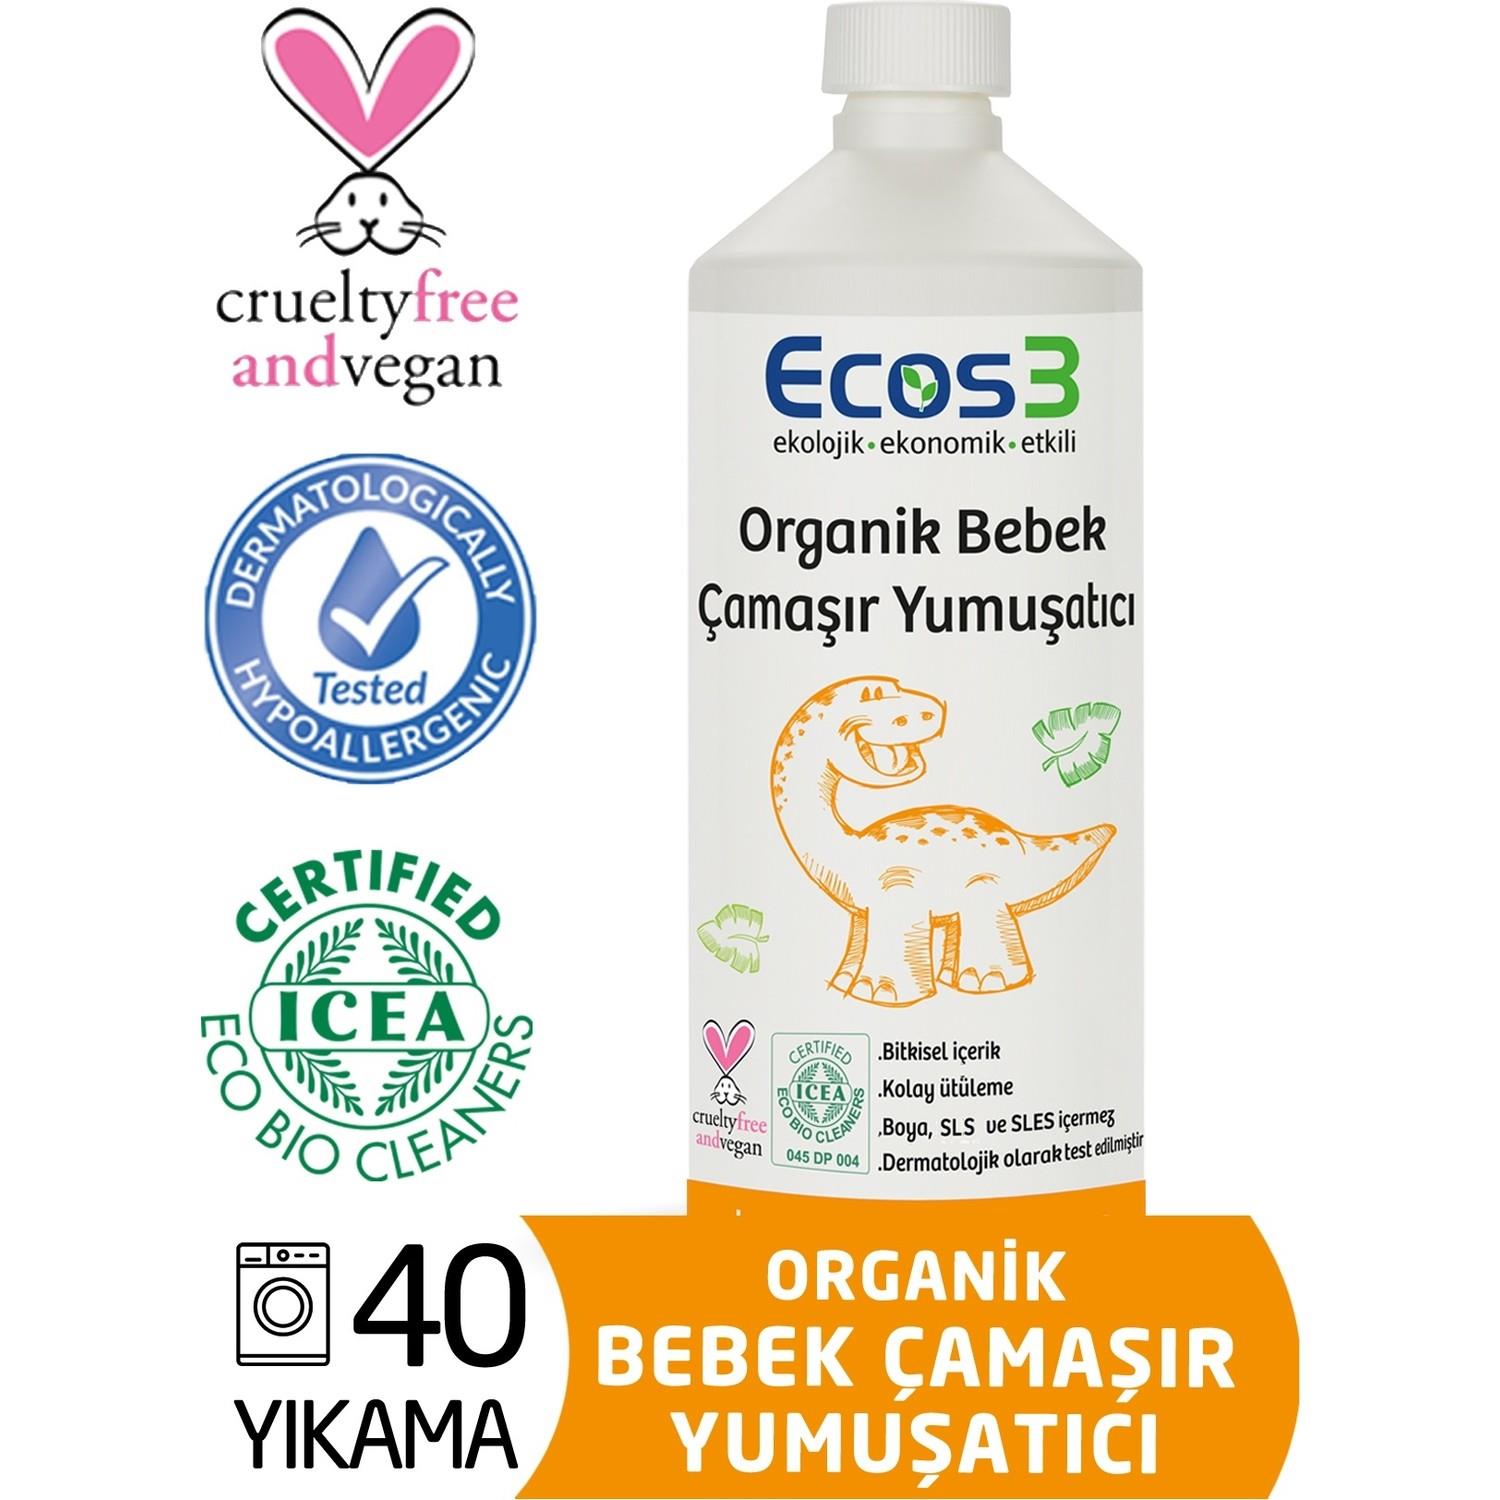 Ecos3 Organik Bebek Çamaşır Yumuşatıcı 1000 ml - 40 Yıkama